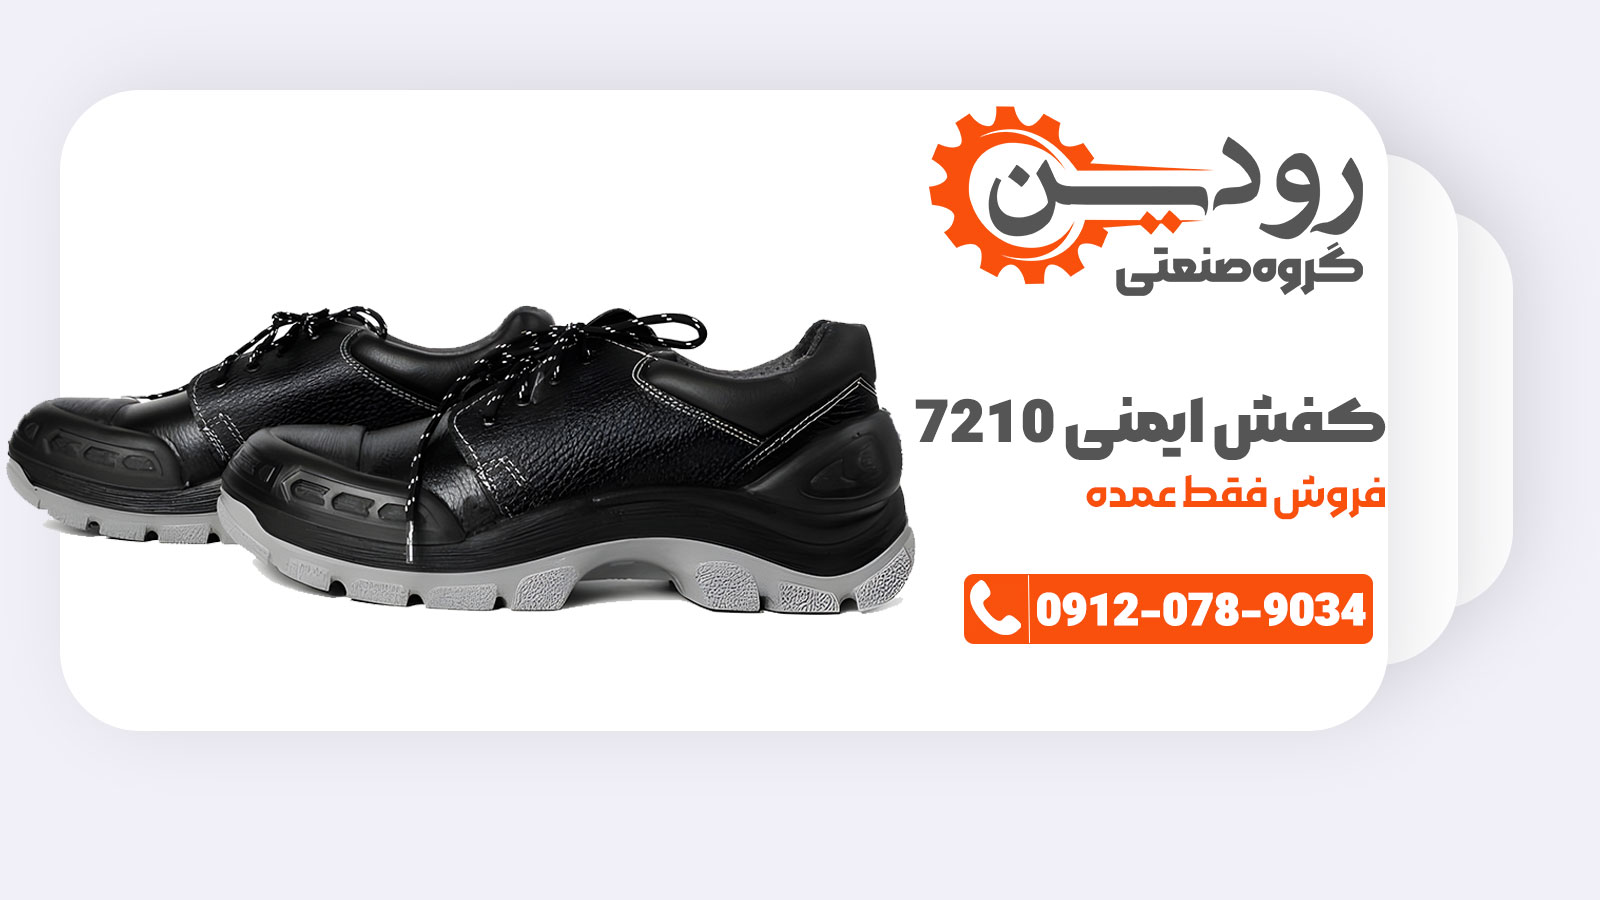 فروش عمده کفش ایمنی 7210 کلار از حداقل 10 جفت به بالا قابل انجام است.